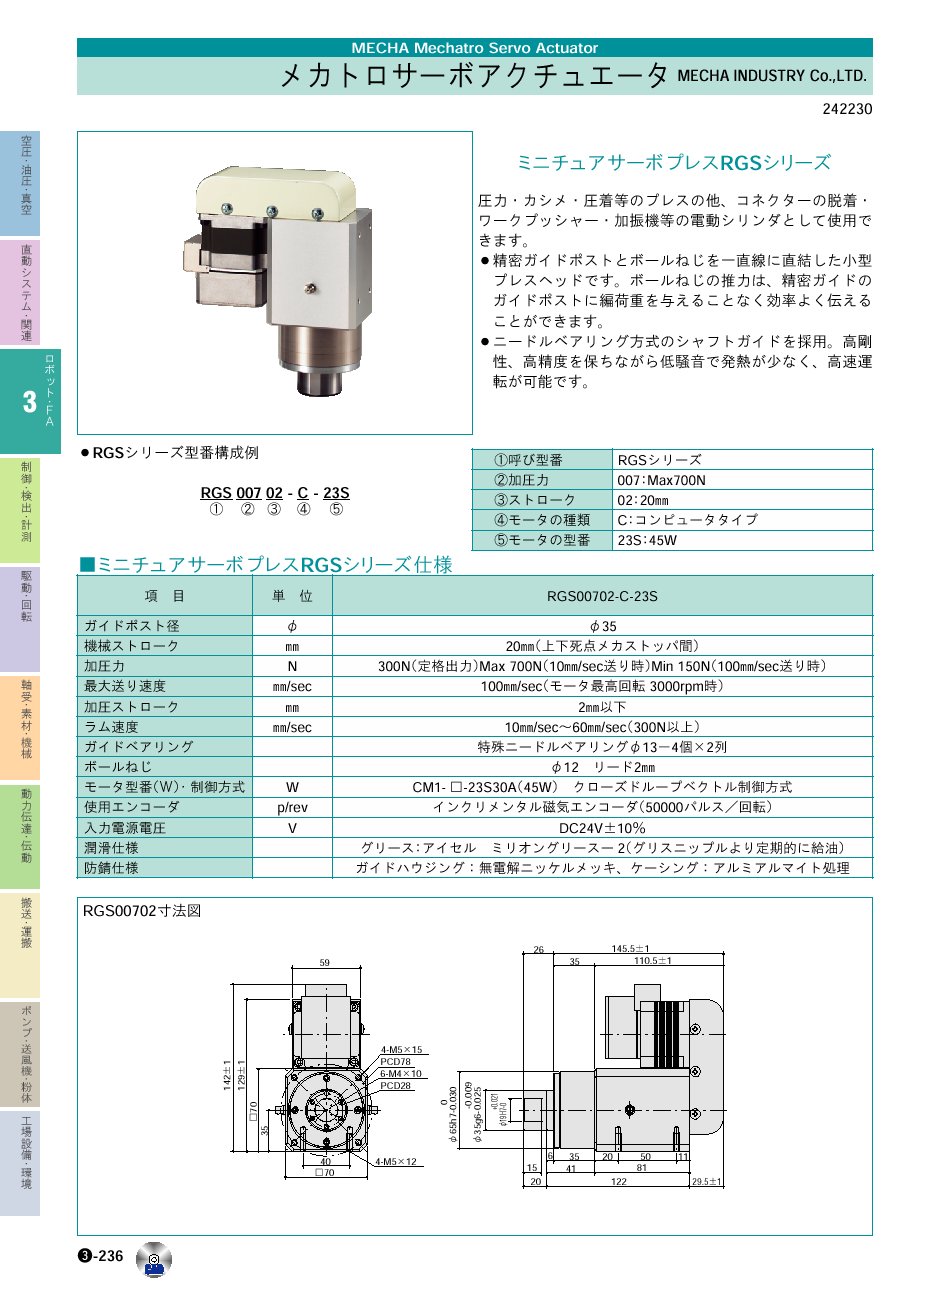 MECHA_INDUSTRY_Co.,LTD.　ミニチュアサーボプレスSPBシリーズ　メカトロサーボアクチュエータ　ロボット・ＦＡ機器　P03-236　価格